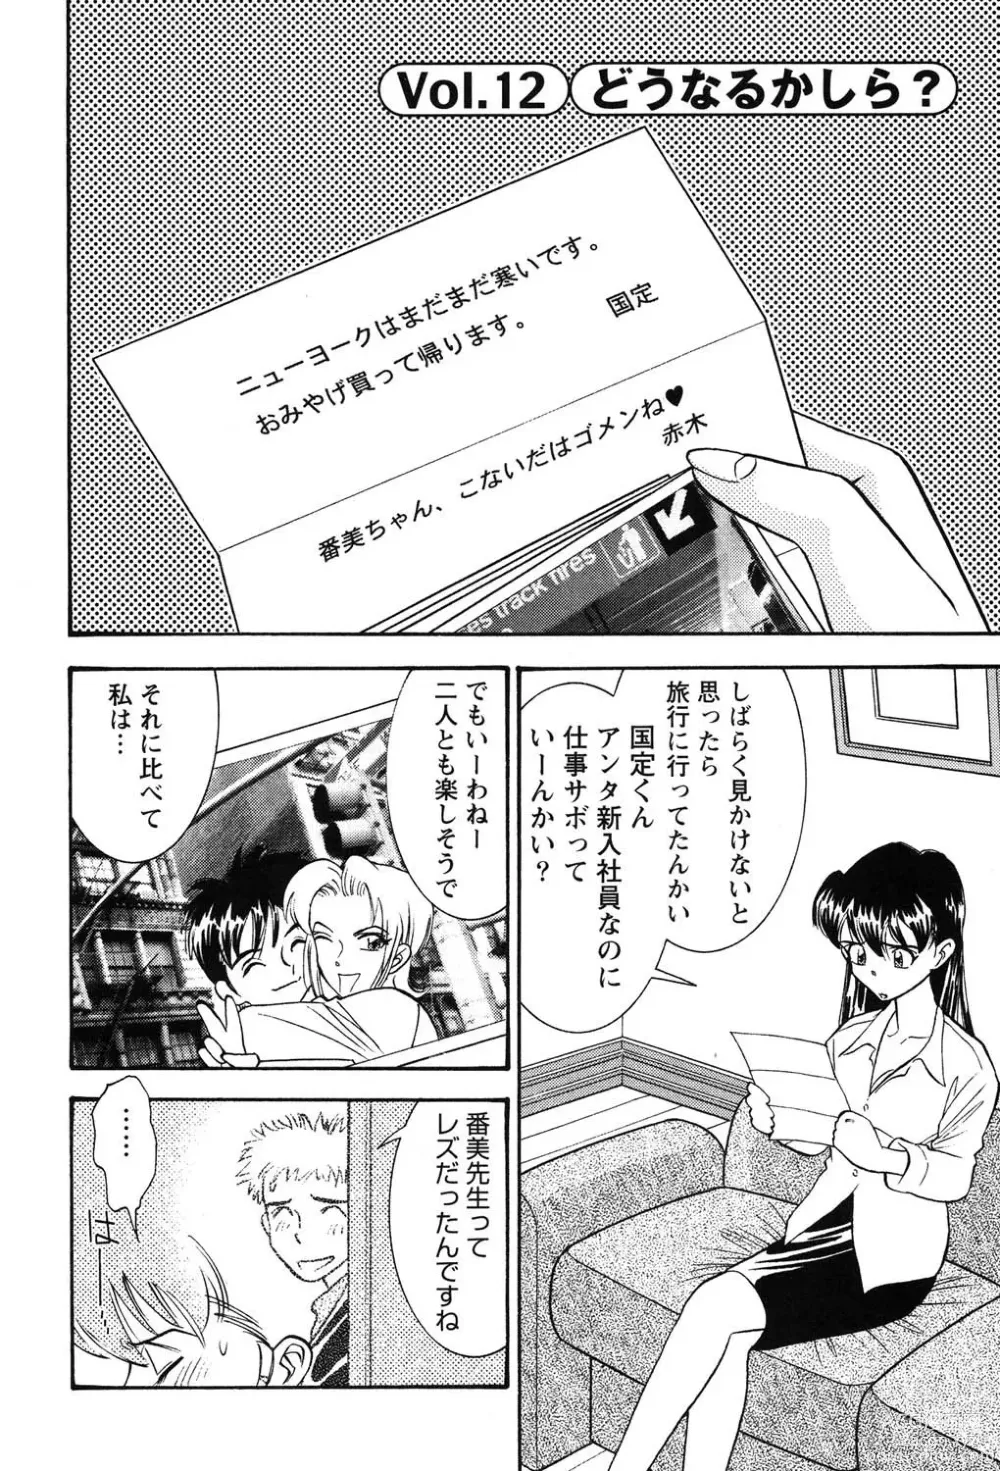 Page 7 of manga Bambina Oiroke  Battle  Hen